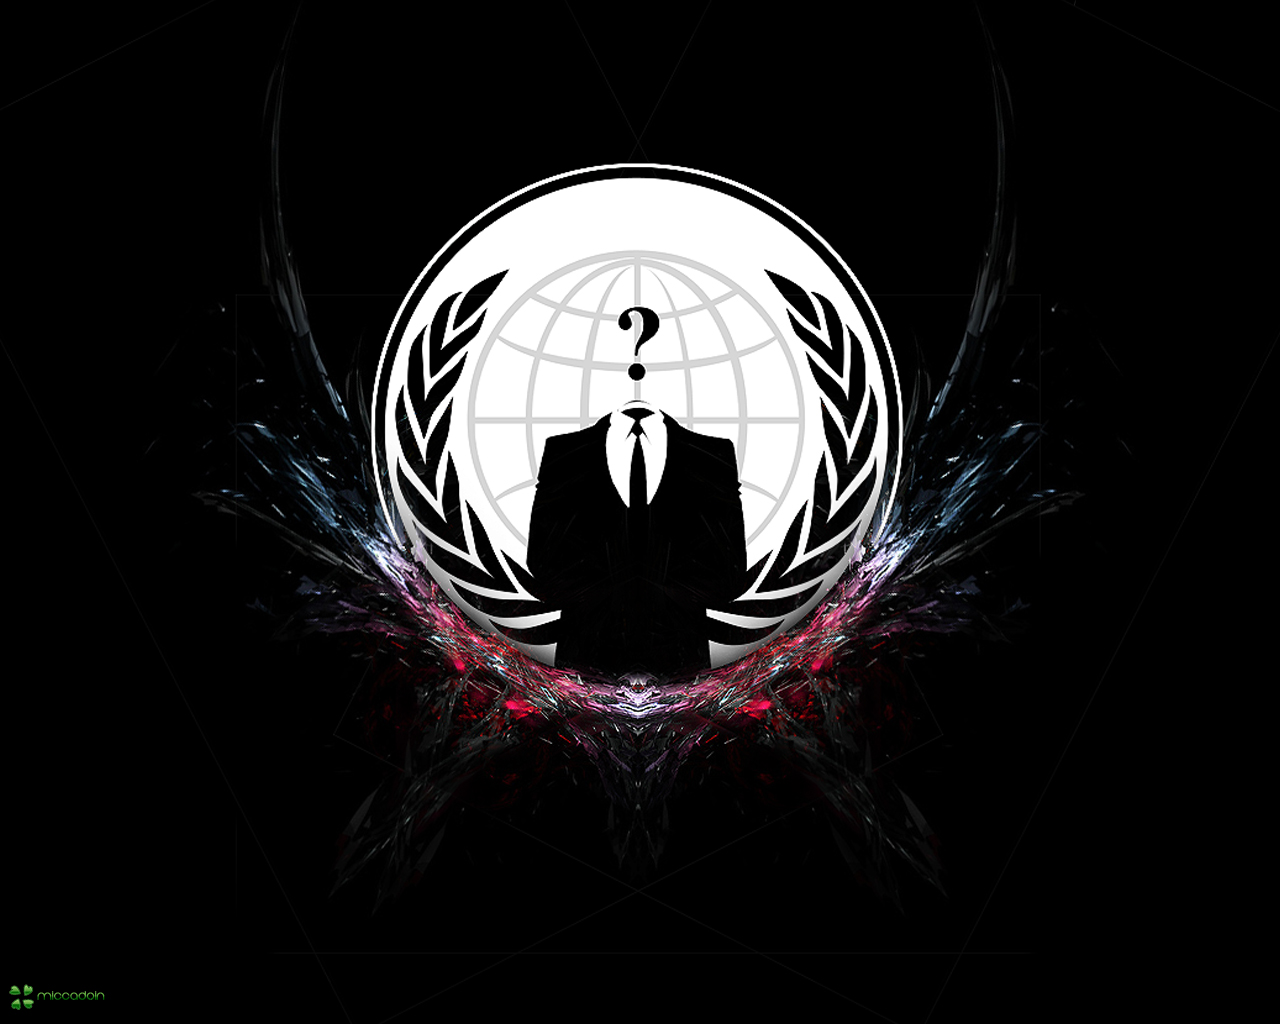 49+] Anonymous Hacker Wallpaper - WallpaperSafari